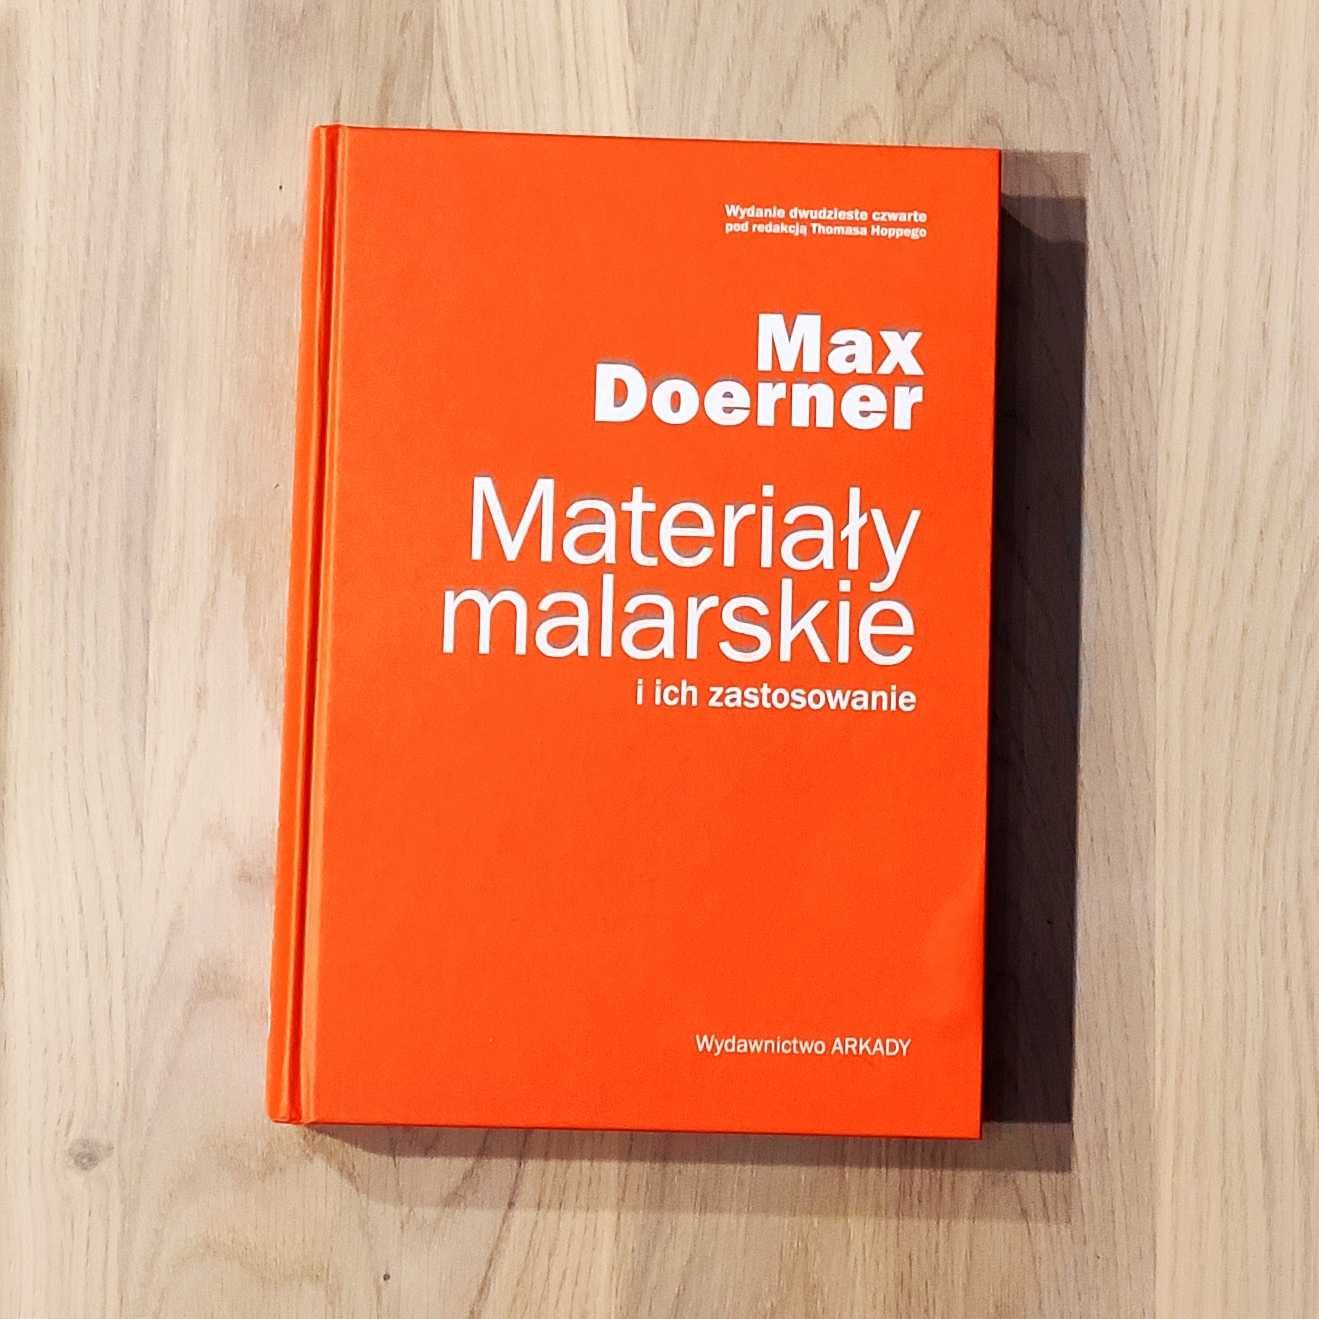 Materiały malarskie i ich zastosowanie. Doerner Max.